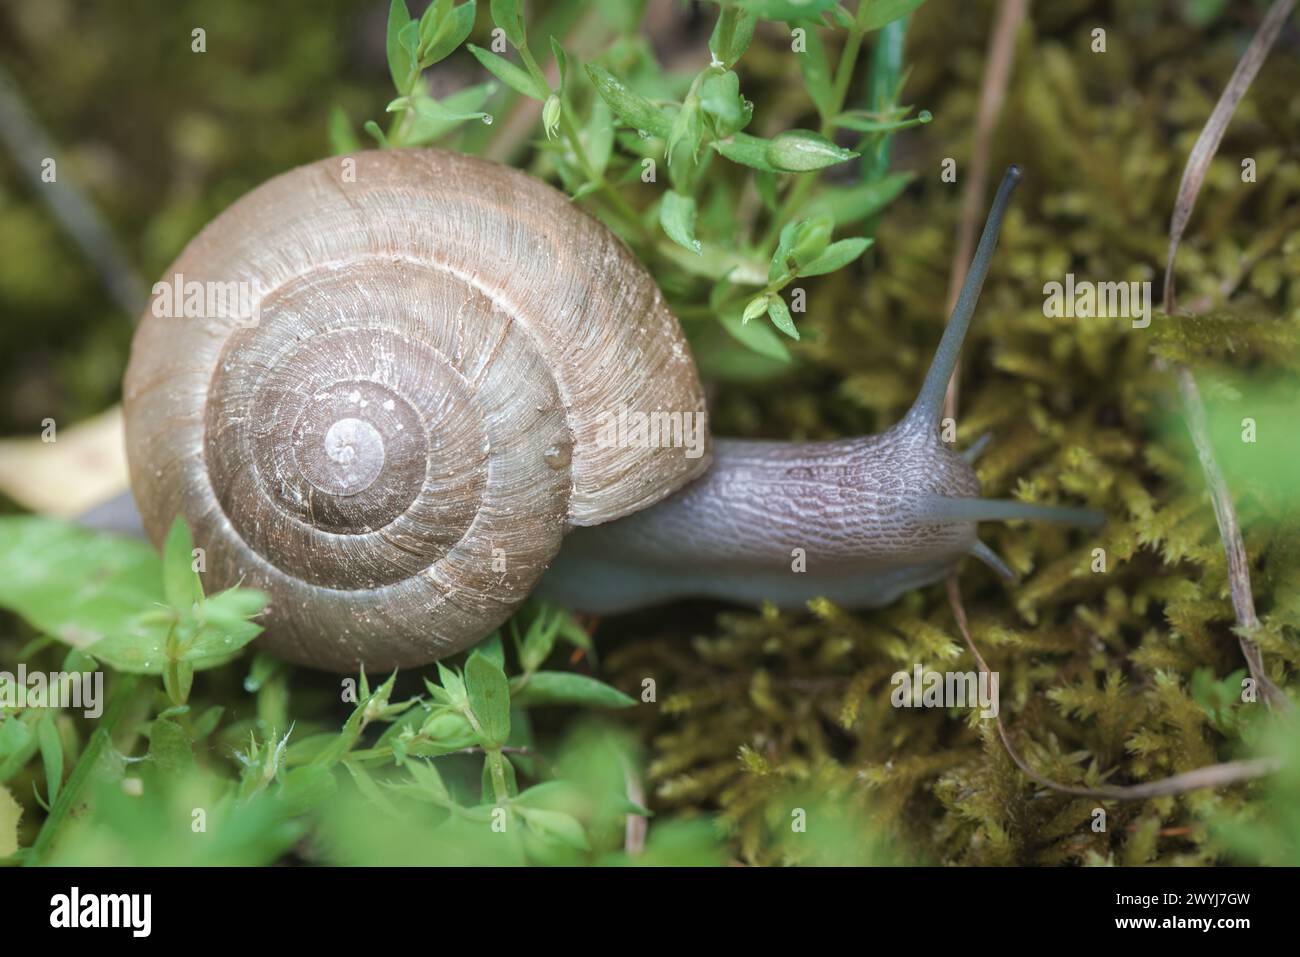 Zonites algirus snail Stock Photo